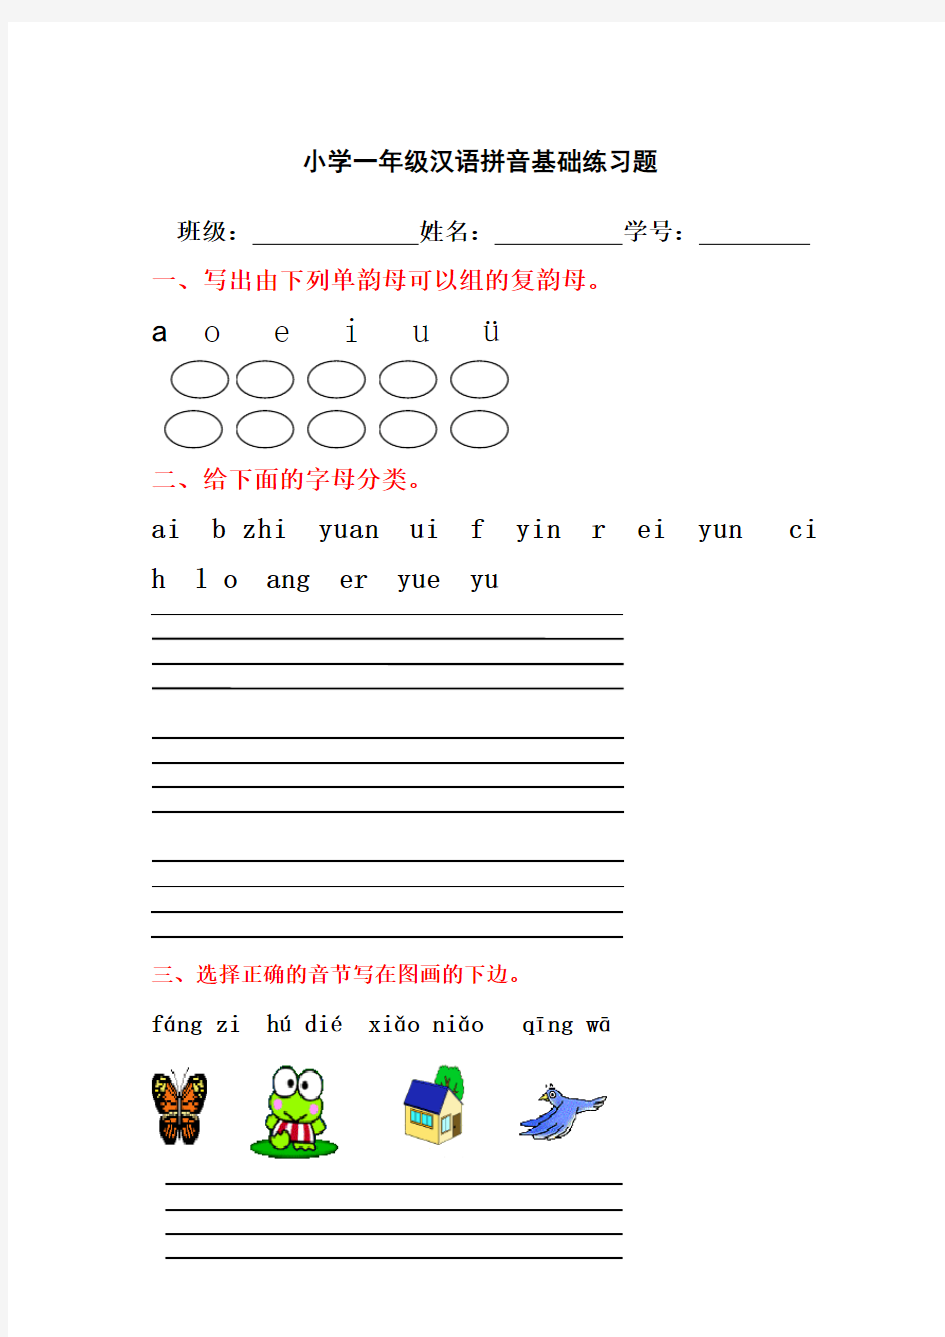 (完整版)小学一年级汉语拼音基础练习题(全)